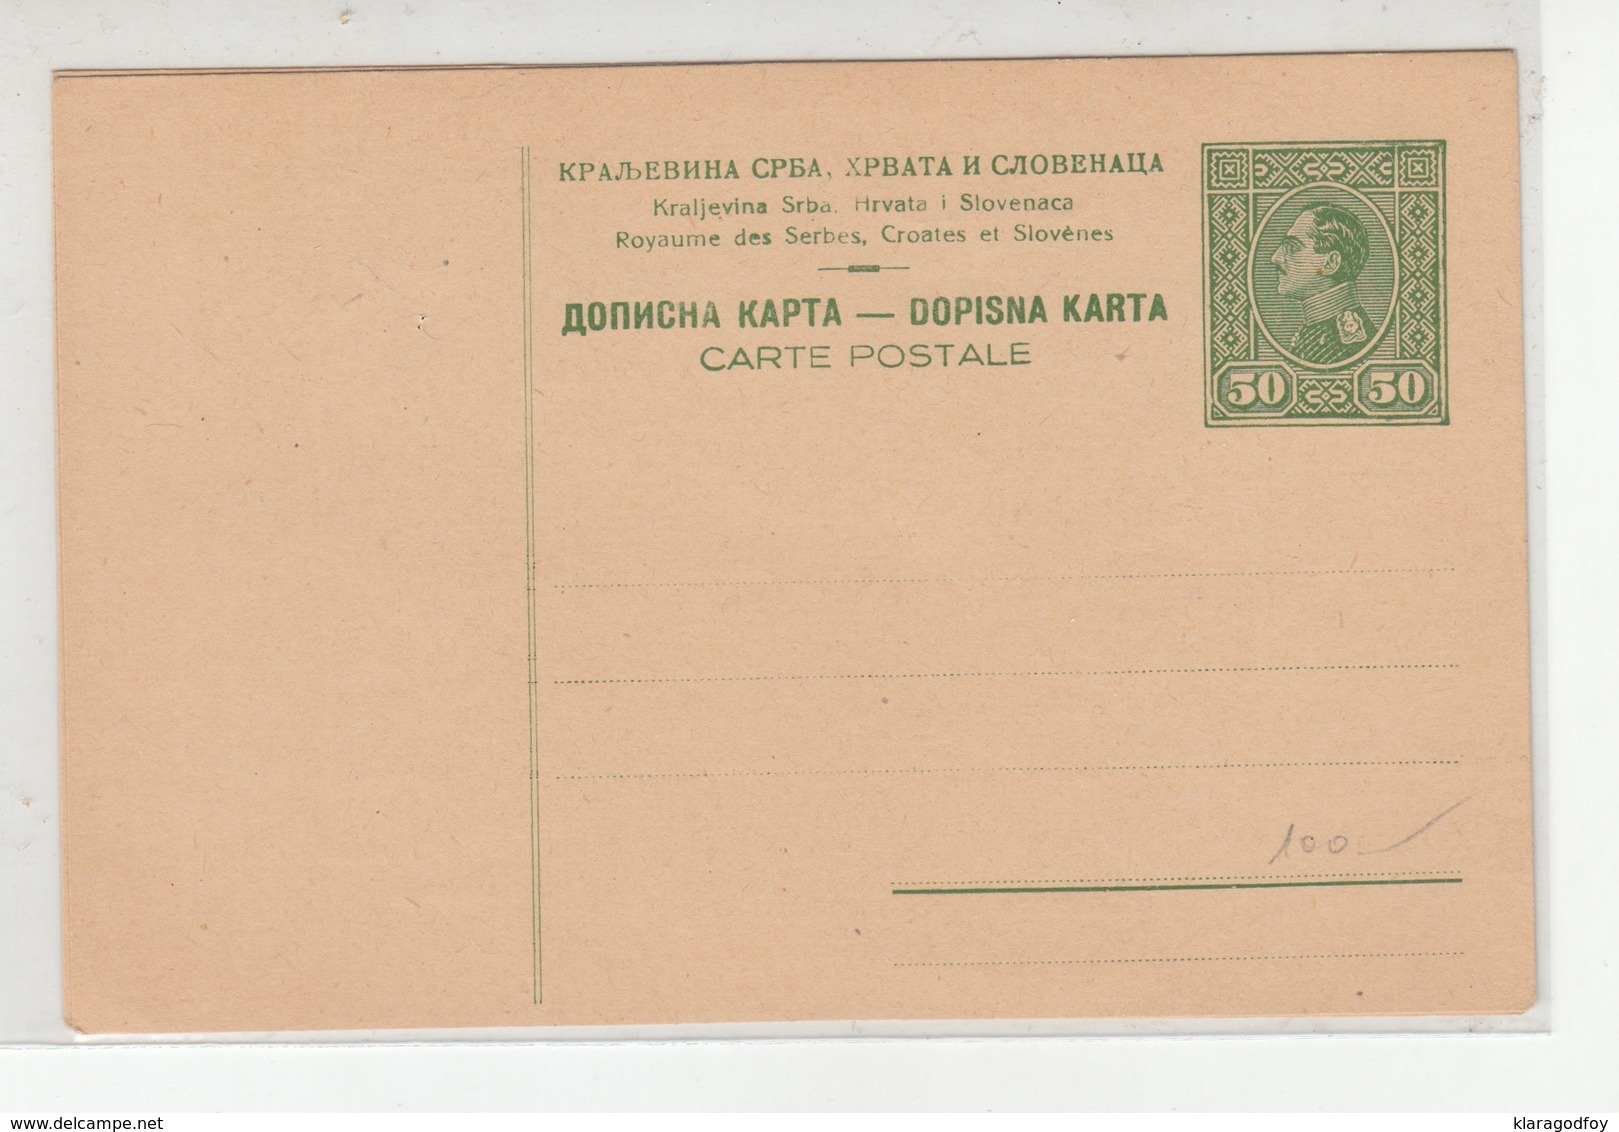 Kingdom SHS Unused Postal Stationery Postcard Dopisna Karta B191210 - Postal Stationery